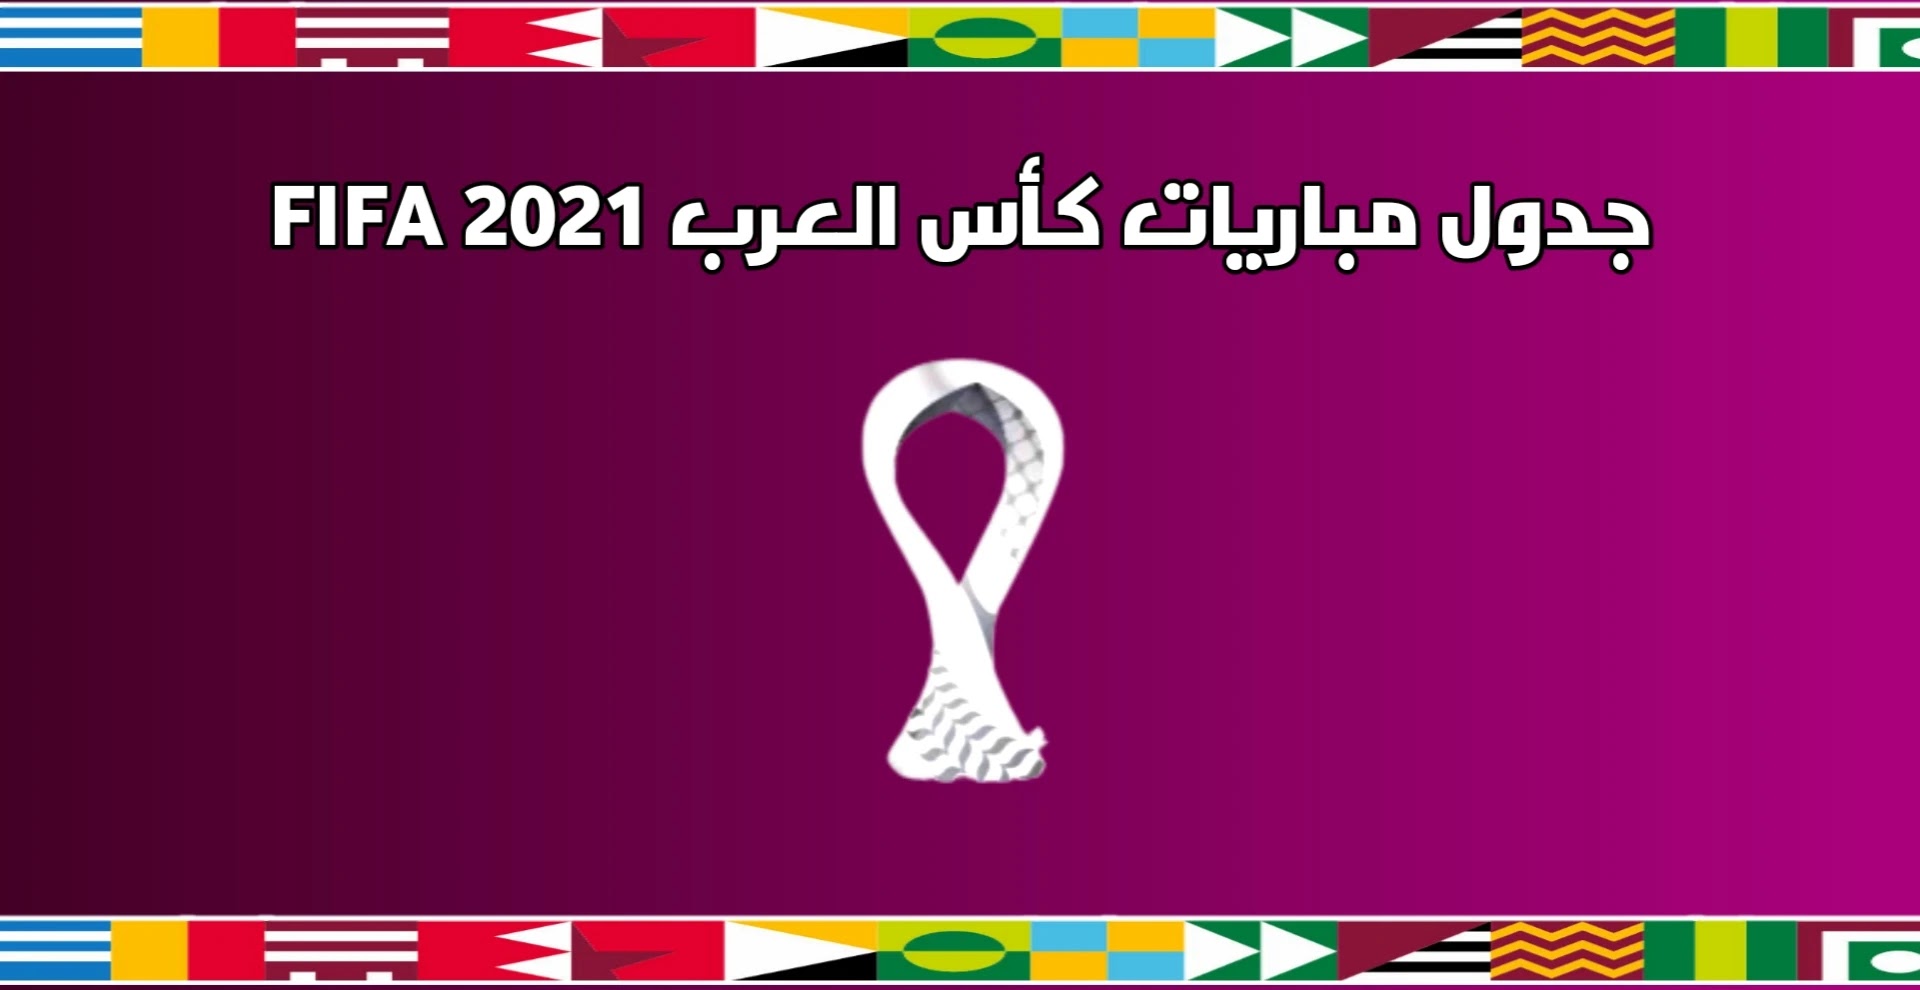 مجموعات كأس العرب للمنتخبات 2021